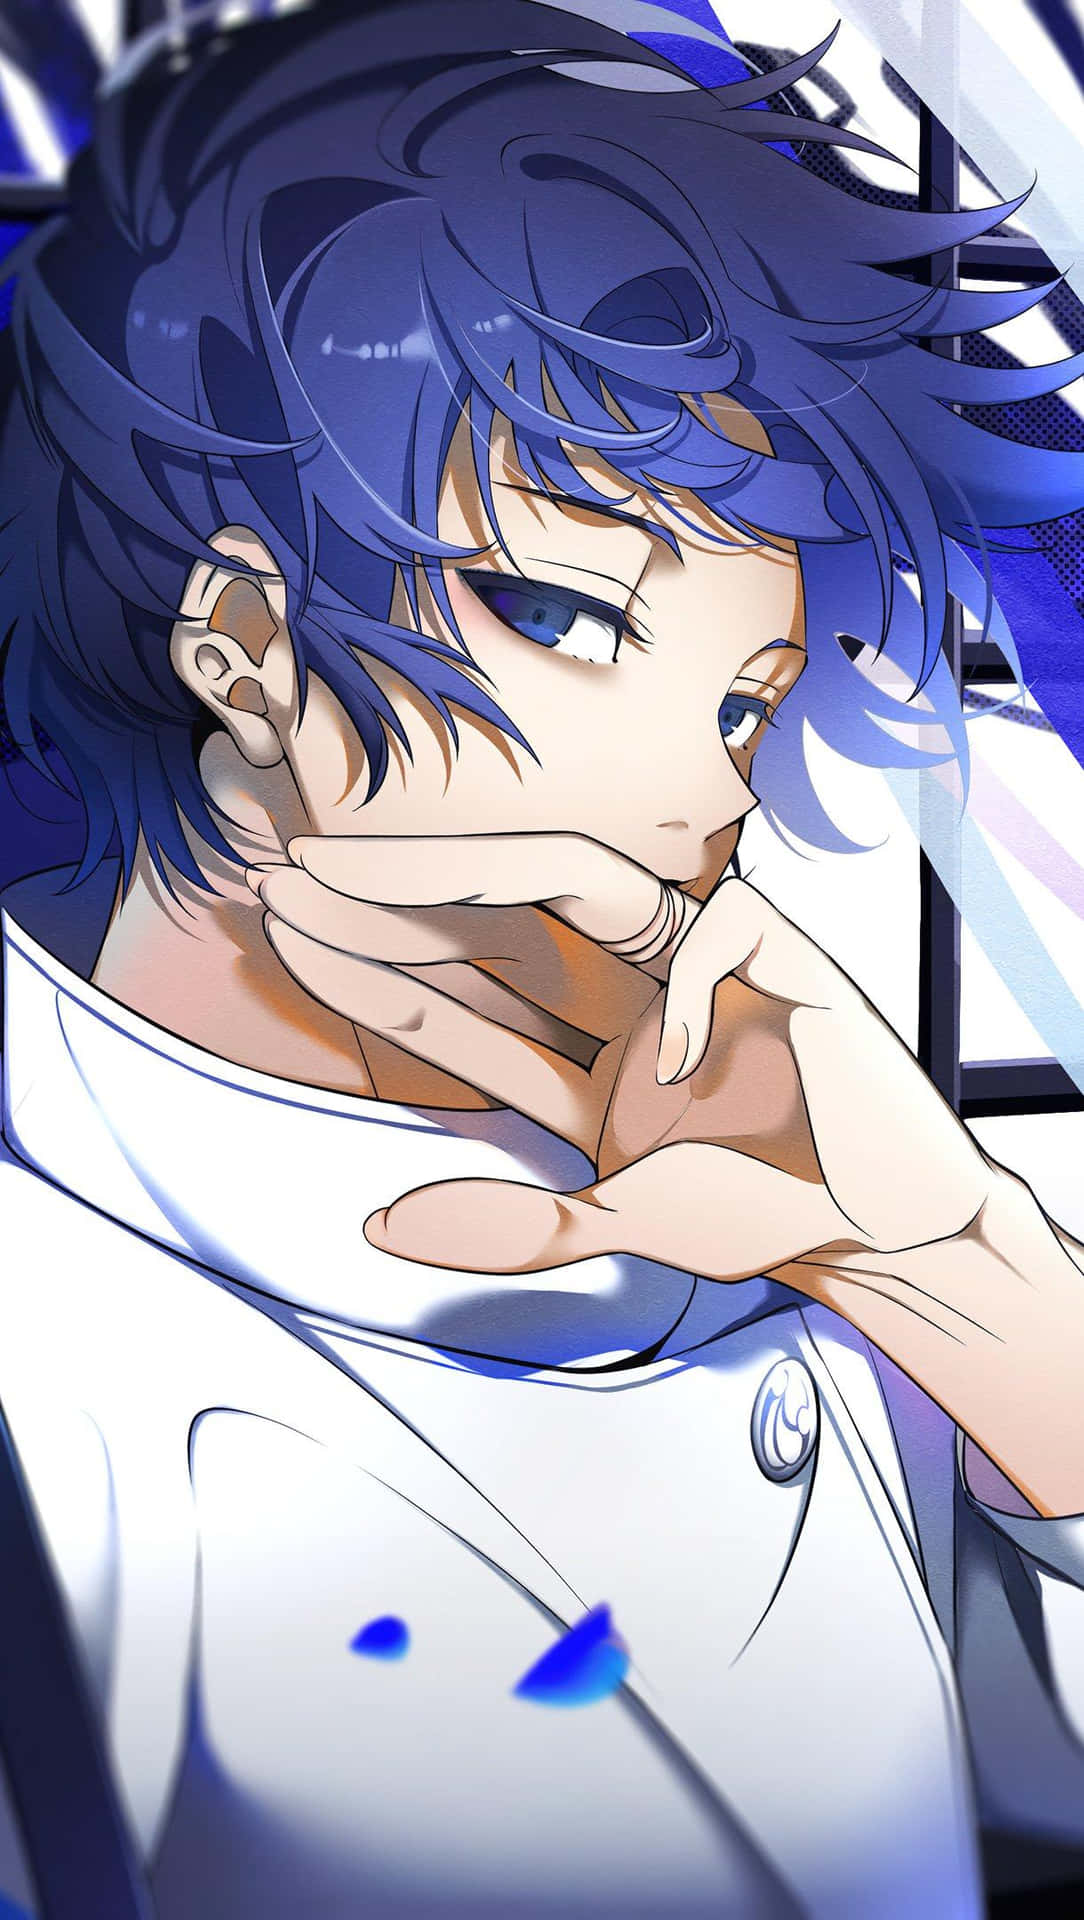 Pensive Anime Character Blue Hues Wallpaper